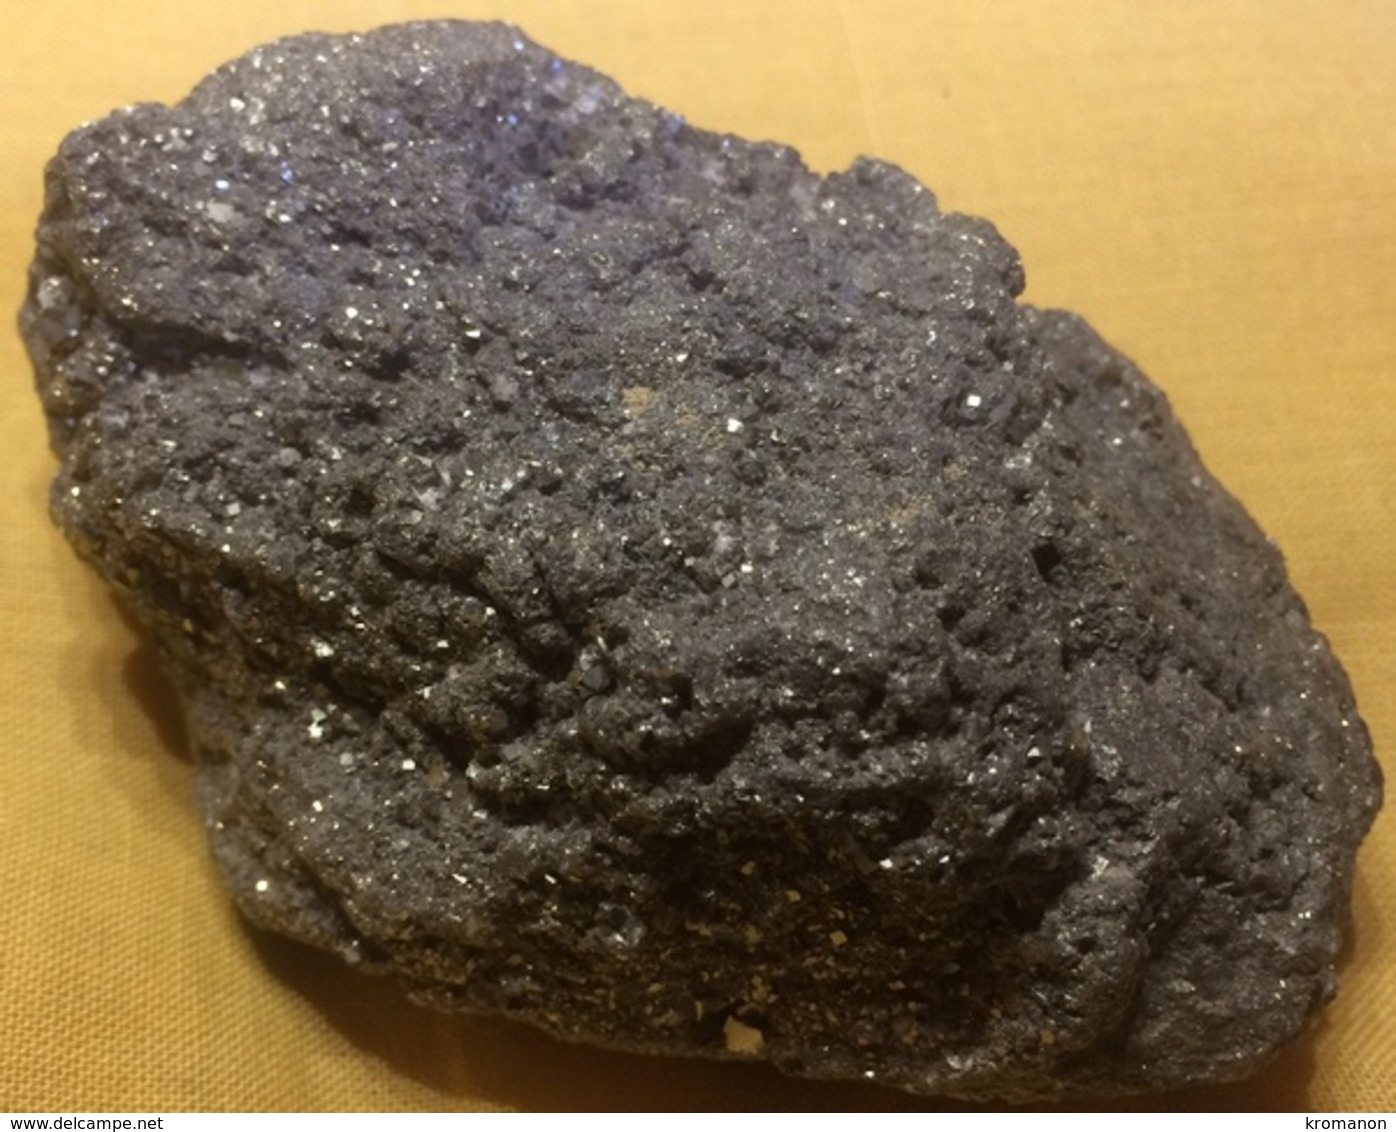 C1-5 Pyrite Roumanie - Minerals